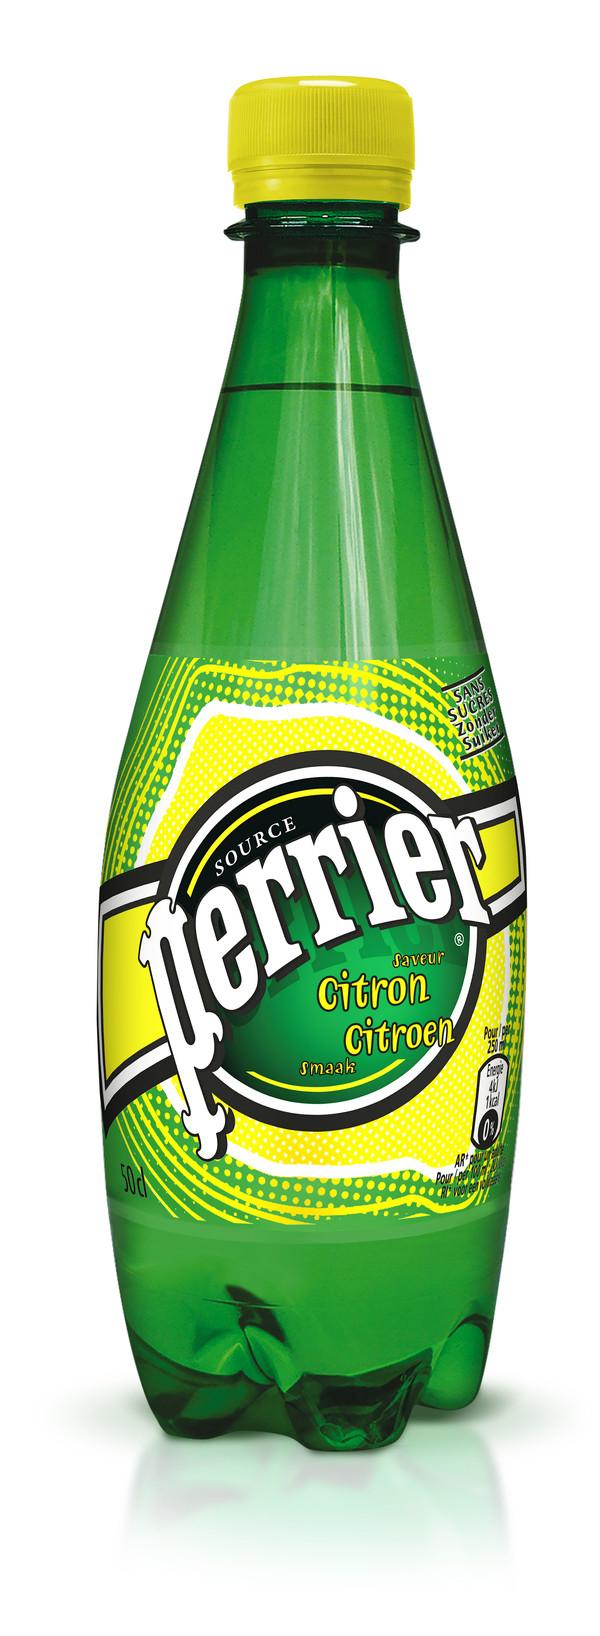 绿色瓶子的苏打水柠檬味的是什么牌子